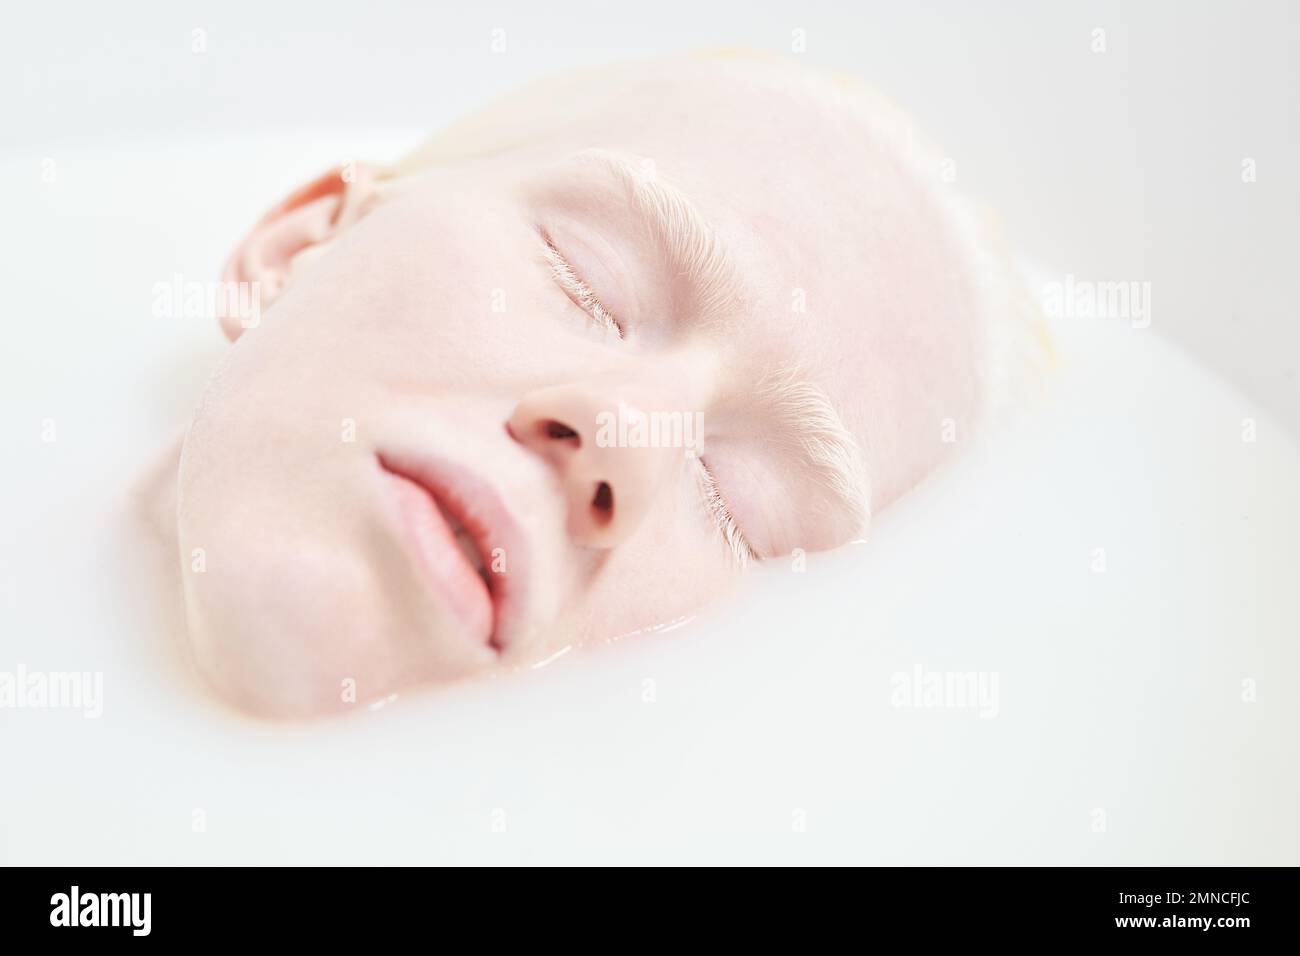 Gros plan du visage pâle d'une jeune femme albinos paisible ou endormie dans une baignoire remplie d'eau chaude et de lait pendant la procédure de beauté Banque D'Images